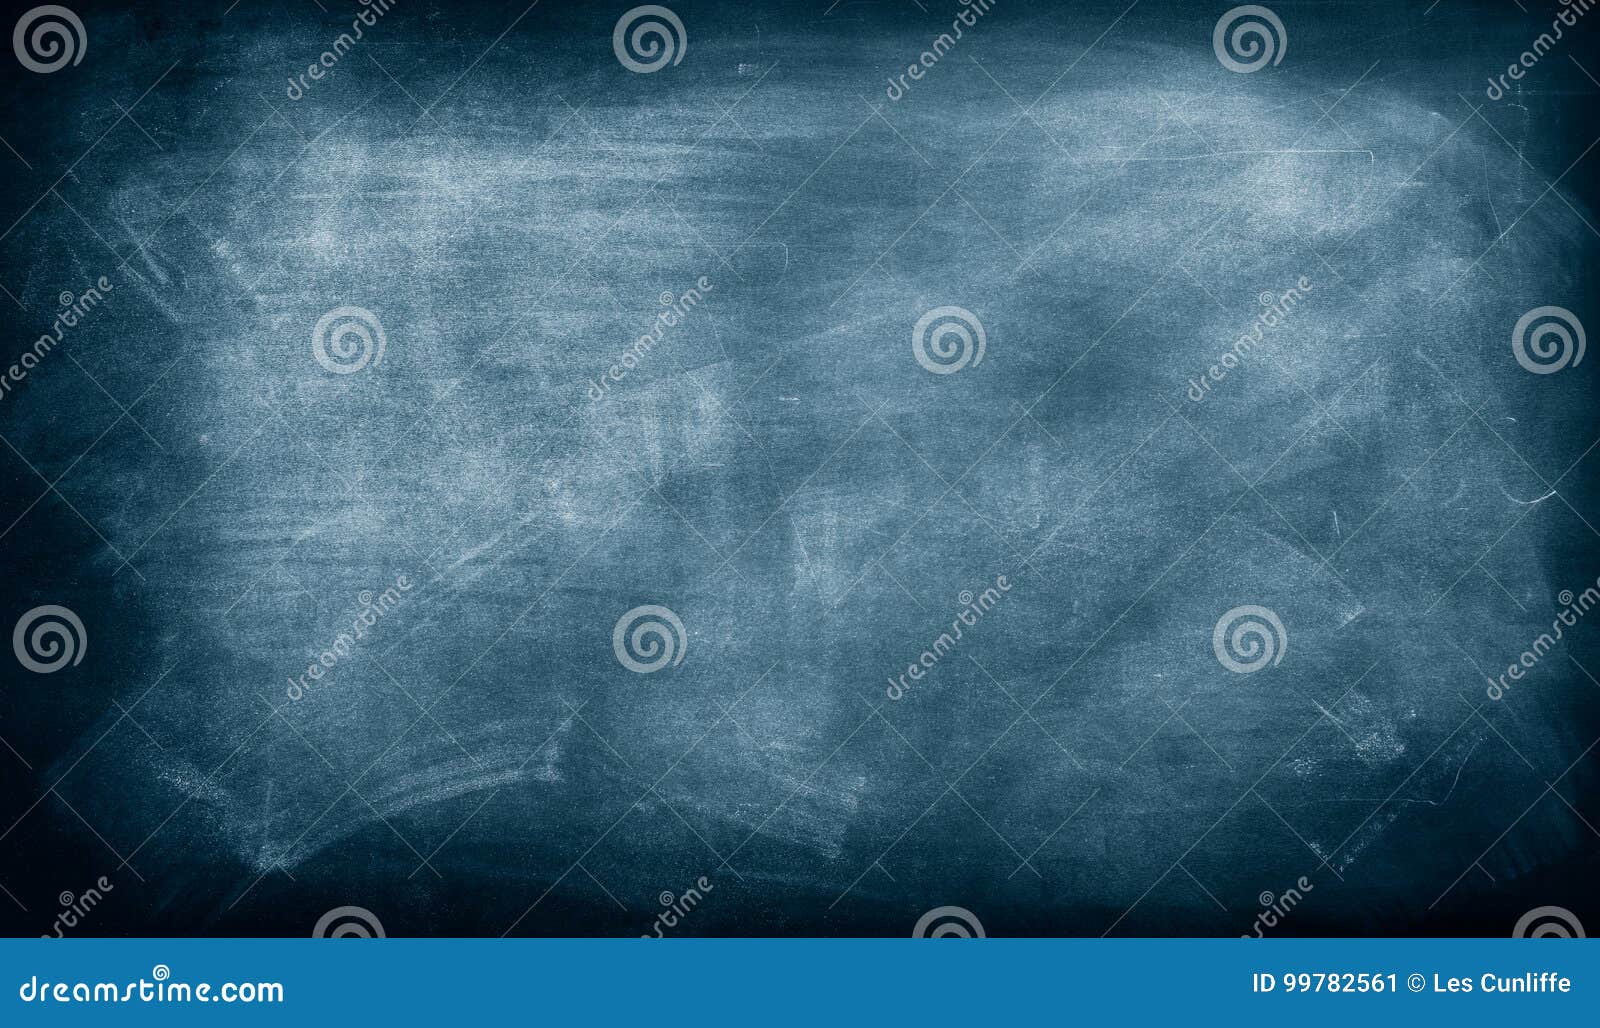 blue chalkboard background